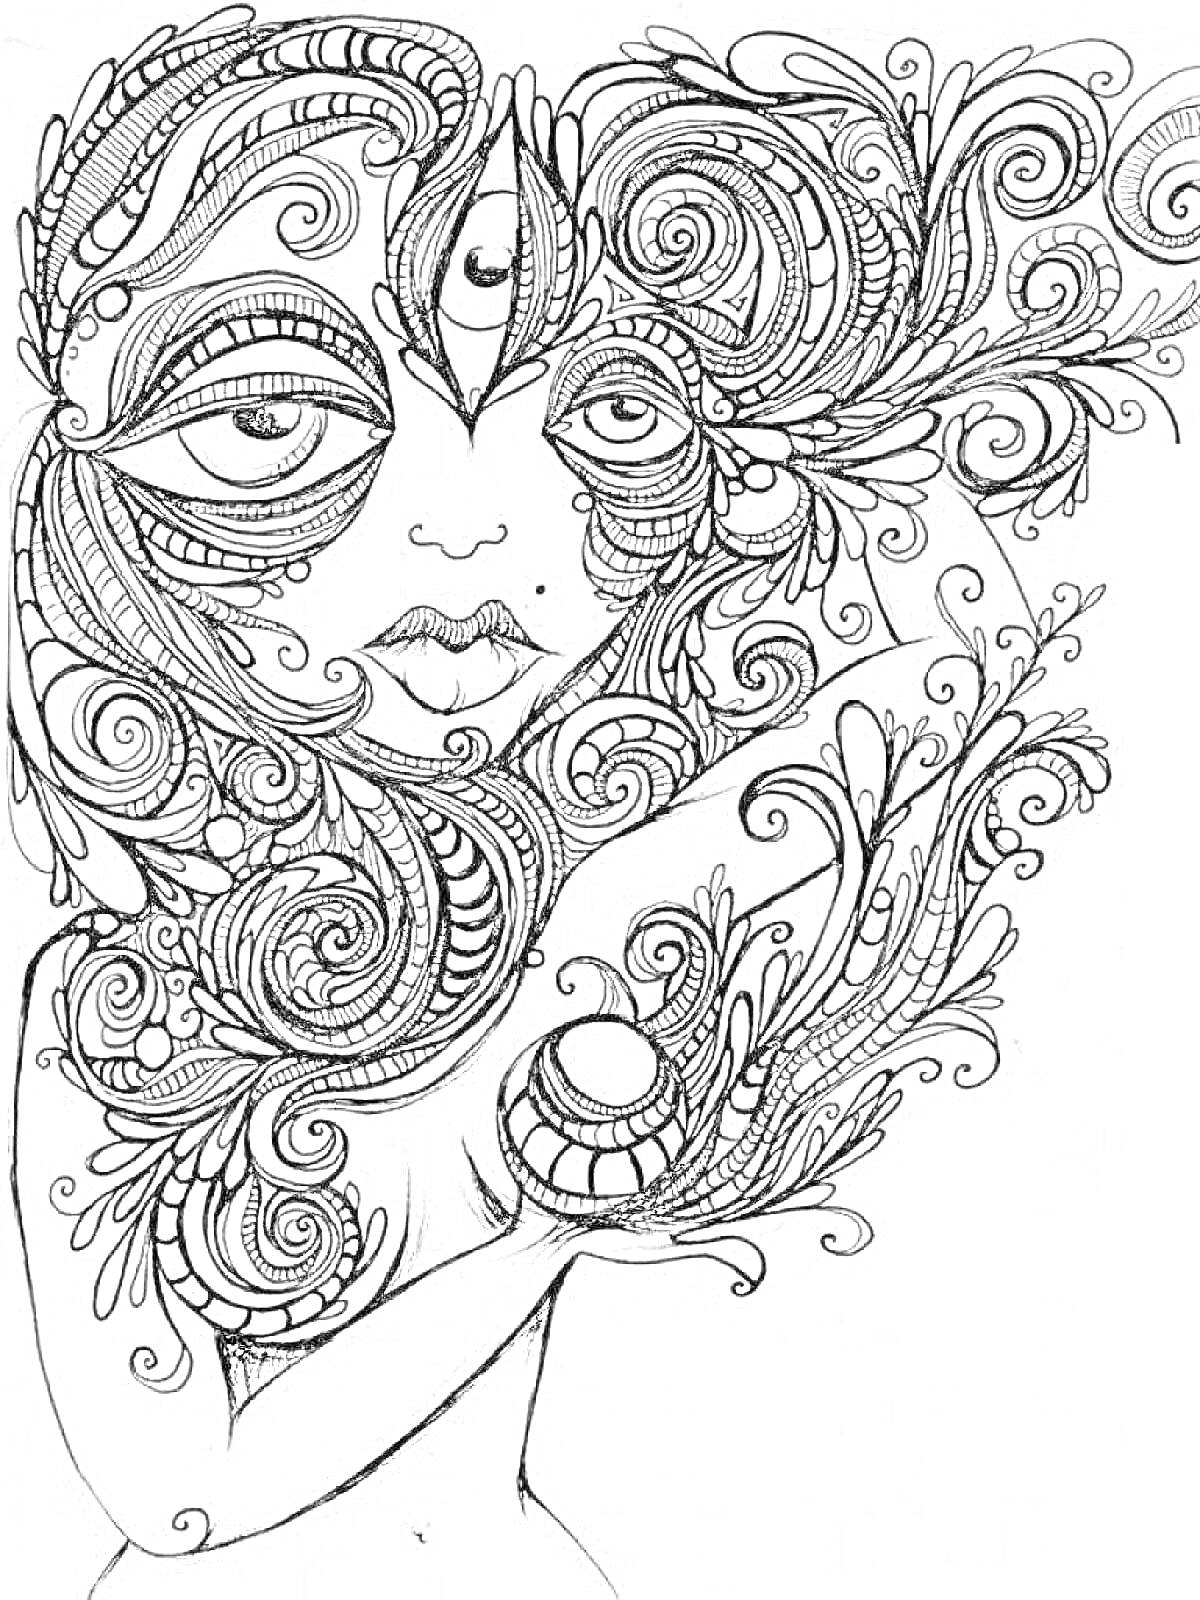 Раскраска Женщина с большим глазом, полумесяцем на лбу и волнистыми психоделическими узорами, окружённая сложными цветочными элементами